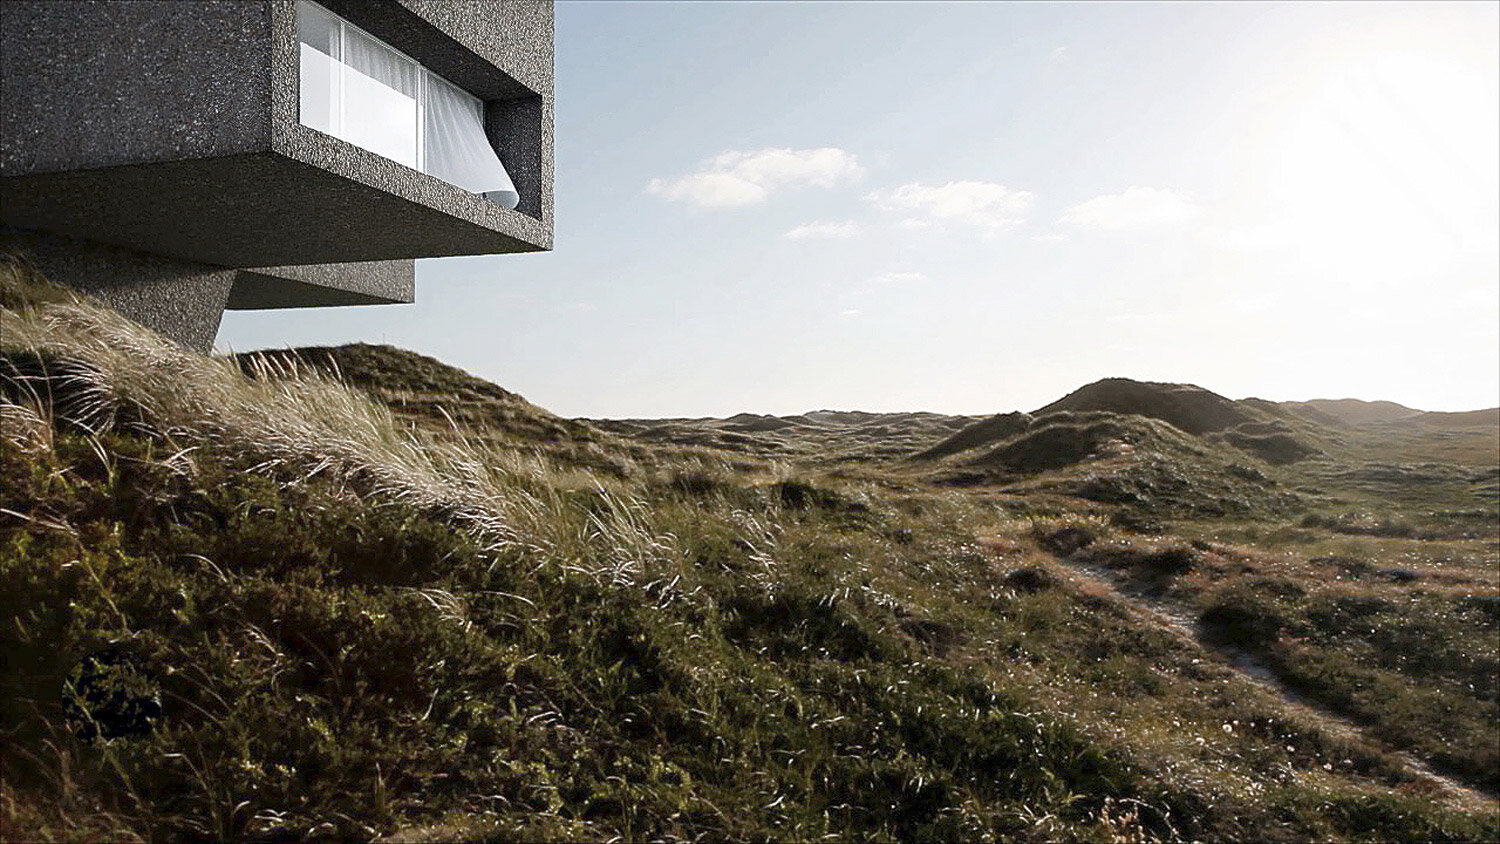 Studio-Viktor-Sørless-Dune House-Visual Atelier 8-Architecture-1.jpg